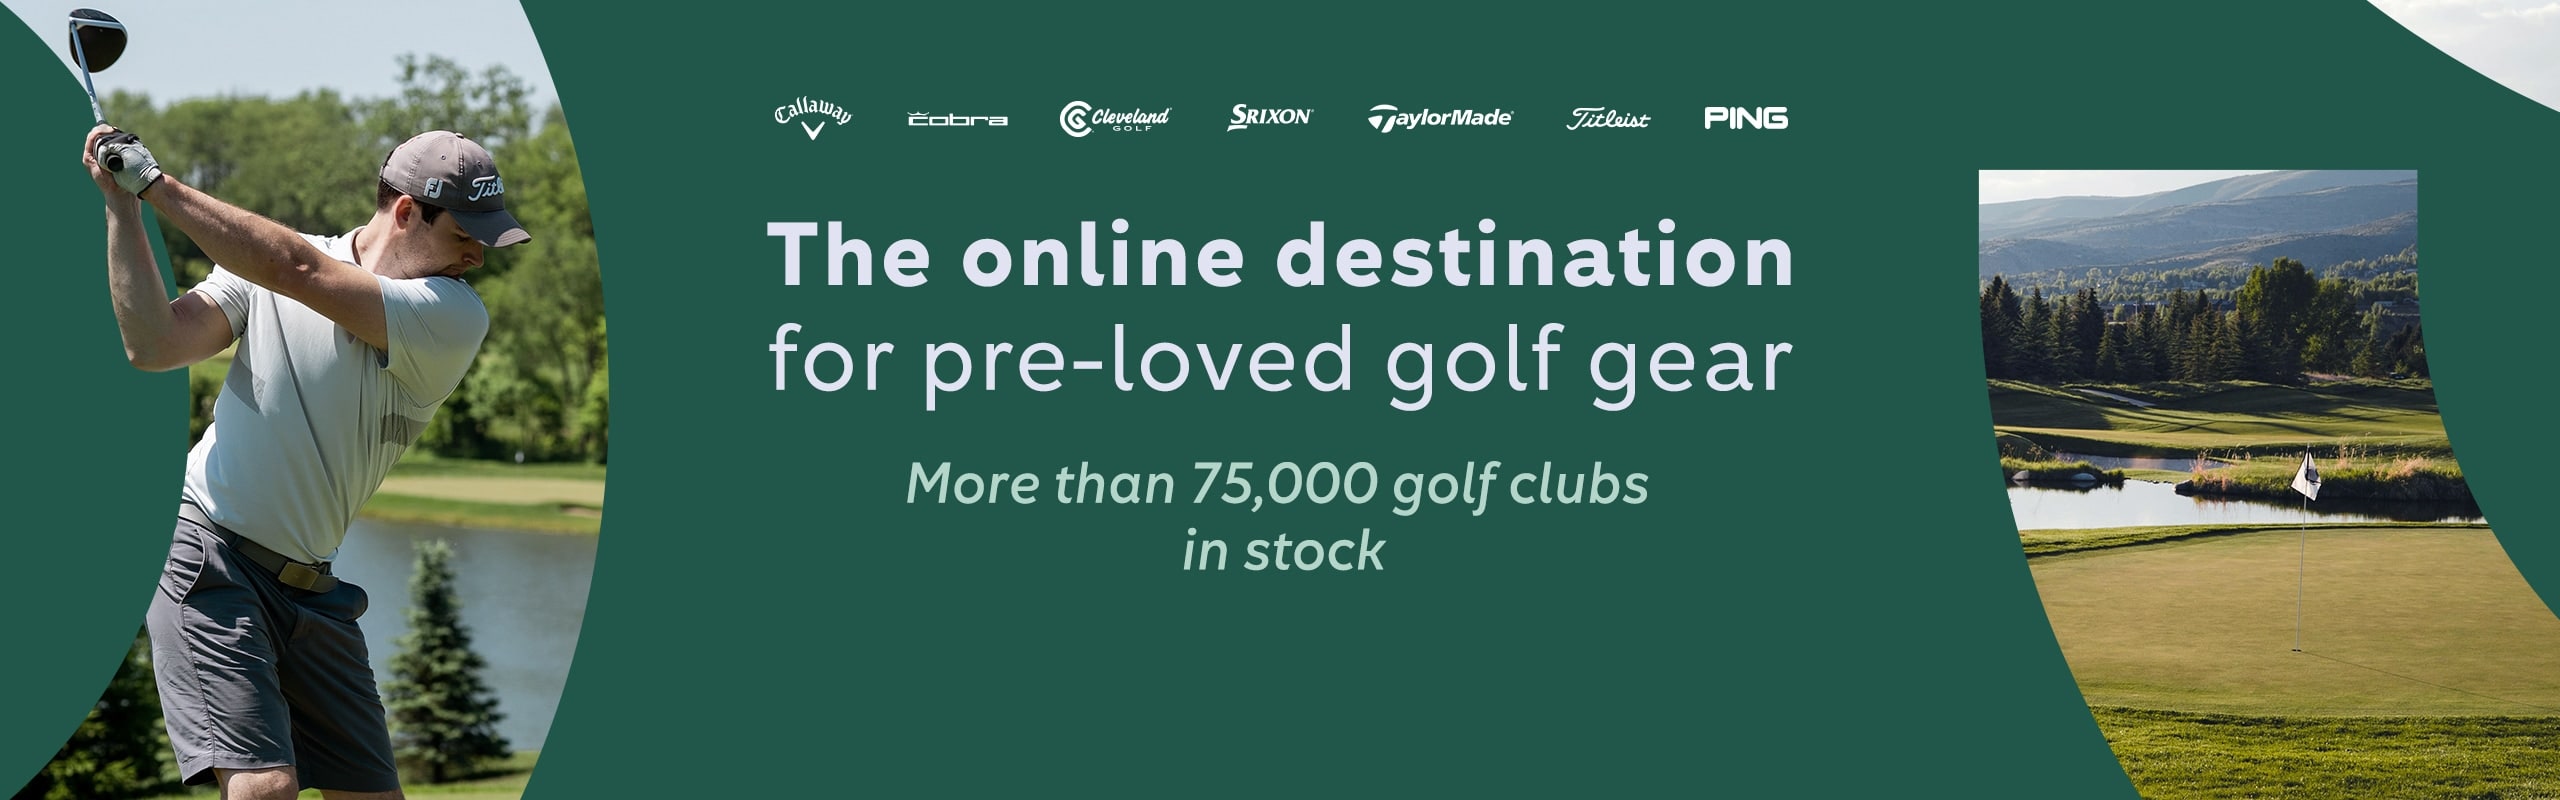 enkel en alleen toewijzen replica Golf Avenue: Pre-Loved Clubs & Equipment for Sale Online